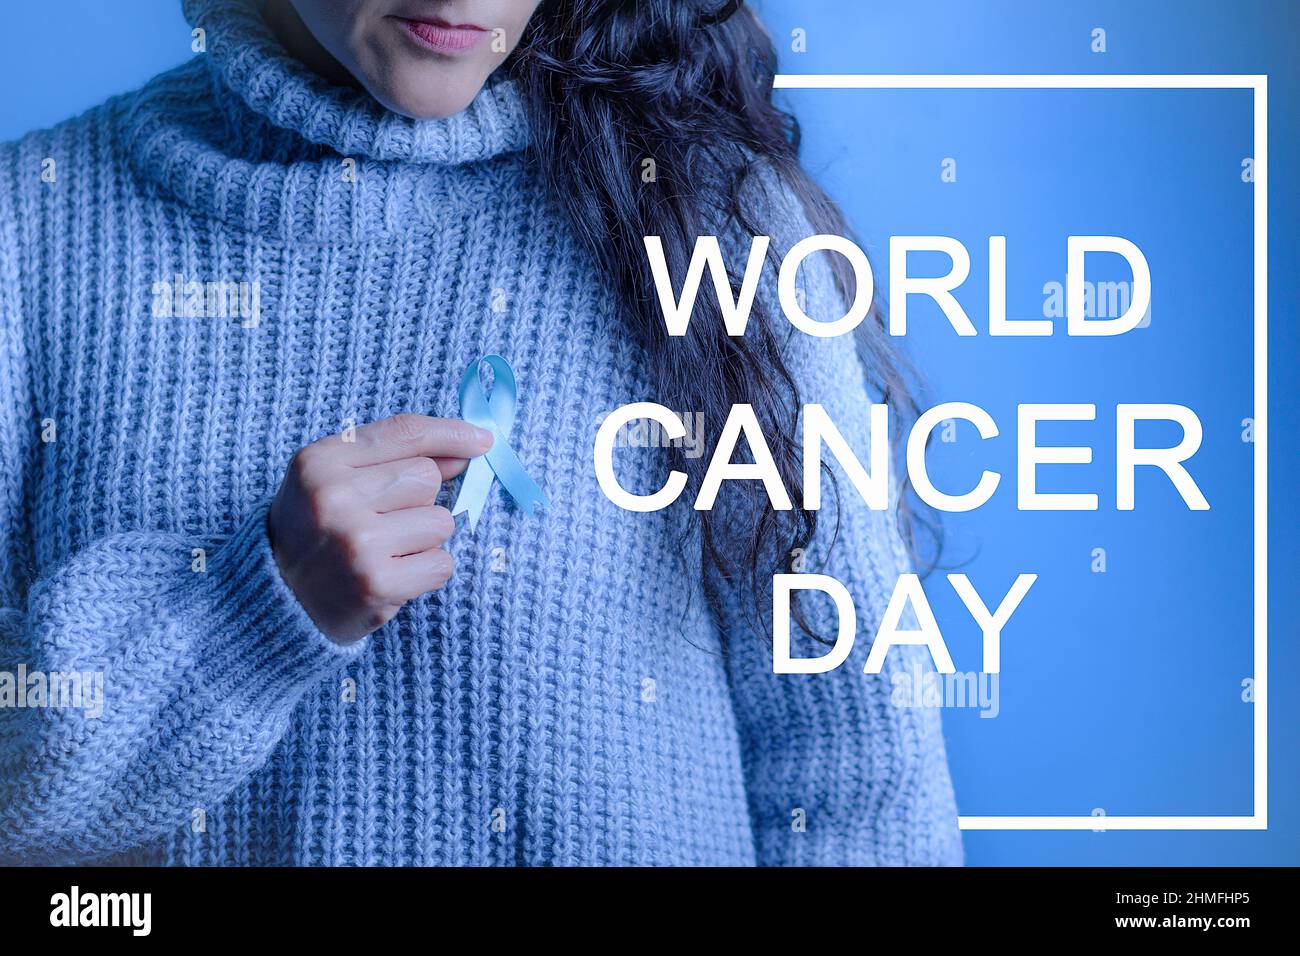 Novembre Prostate Cancer Awareness Month, Una donna che tiene il nastro blu a sostegno di persone con cancro. Cancro della prostata e consapevolezza della salute c Foto Stock